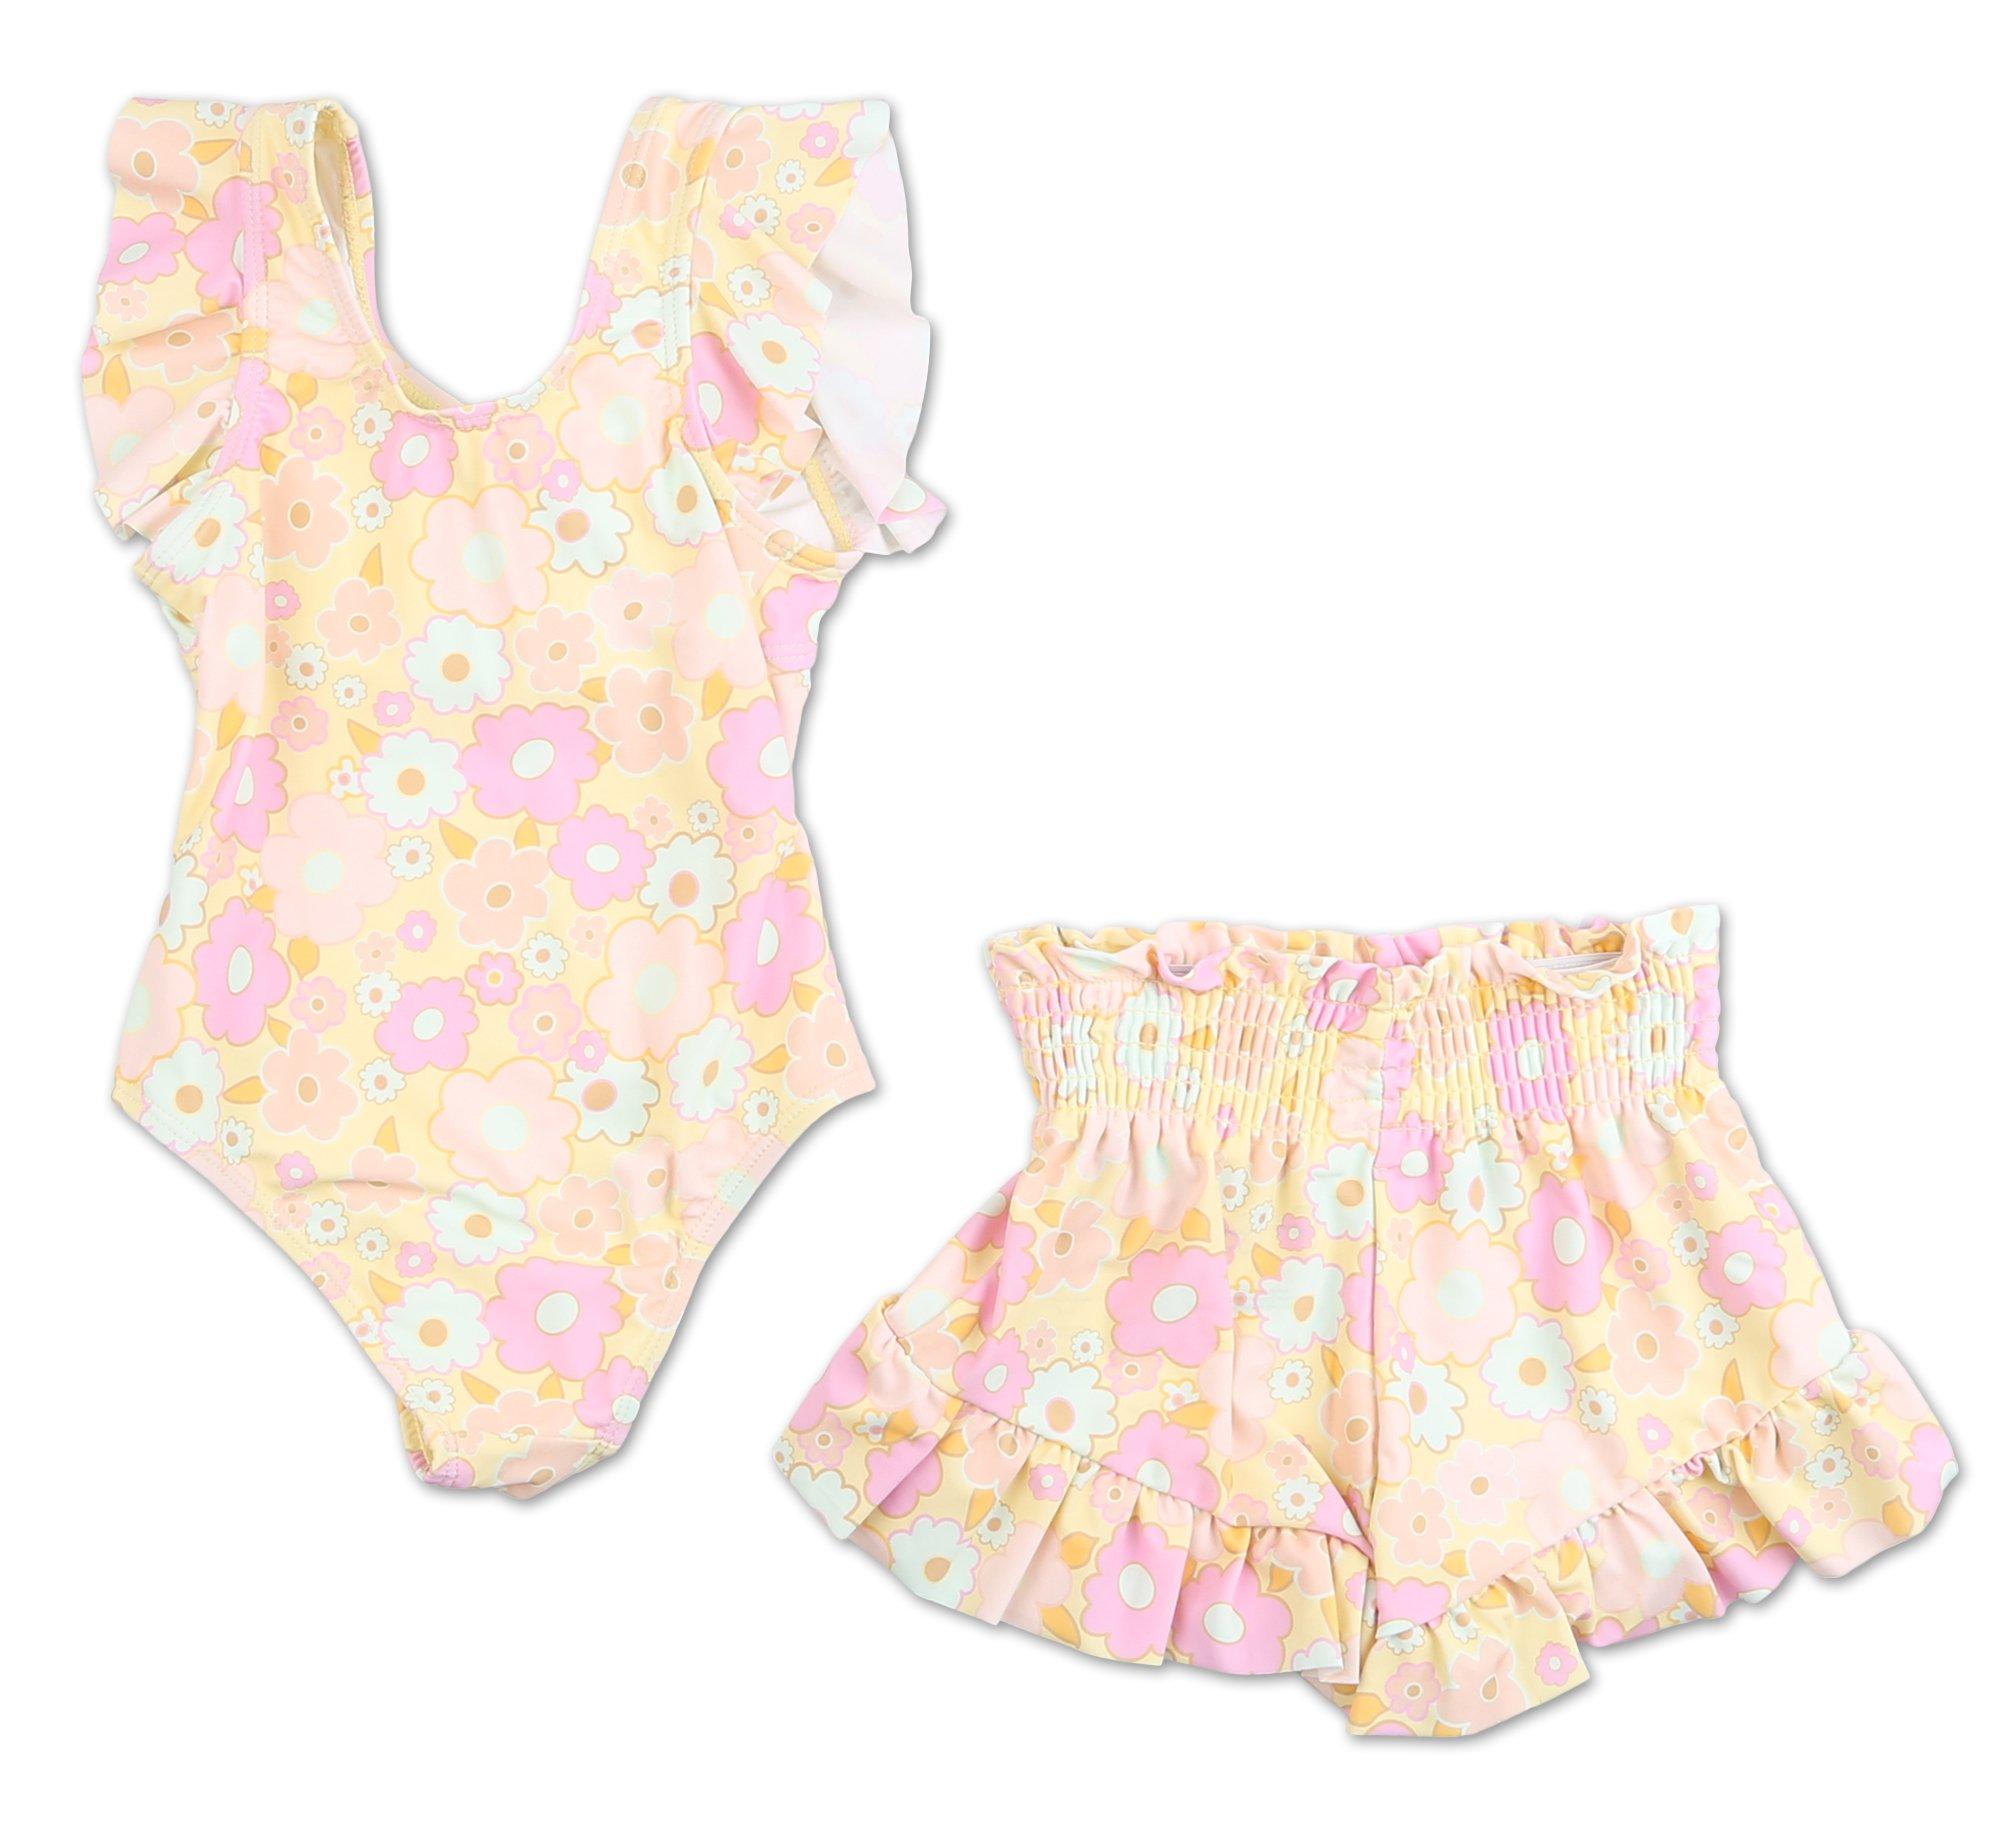 Toddler Girls 2 Pc Swimsuit Set